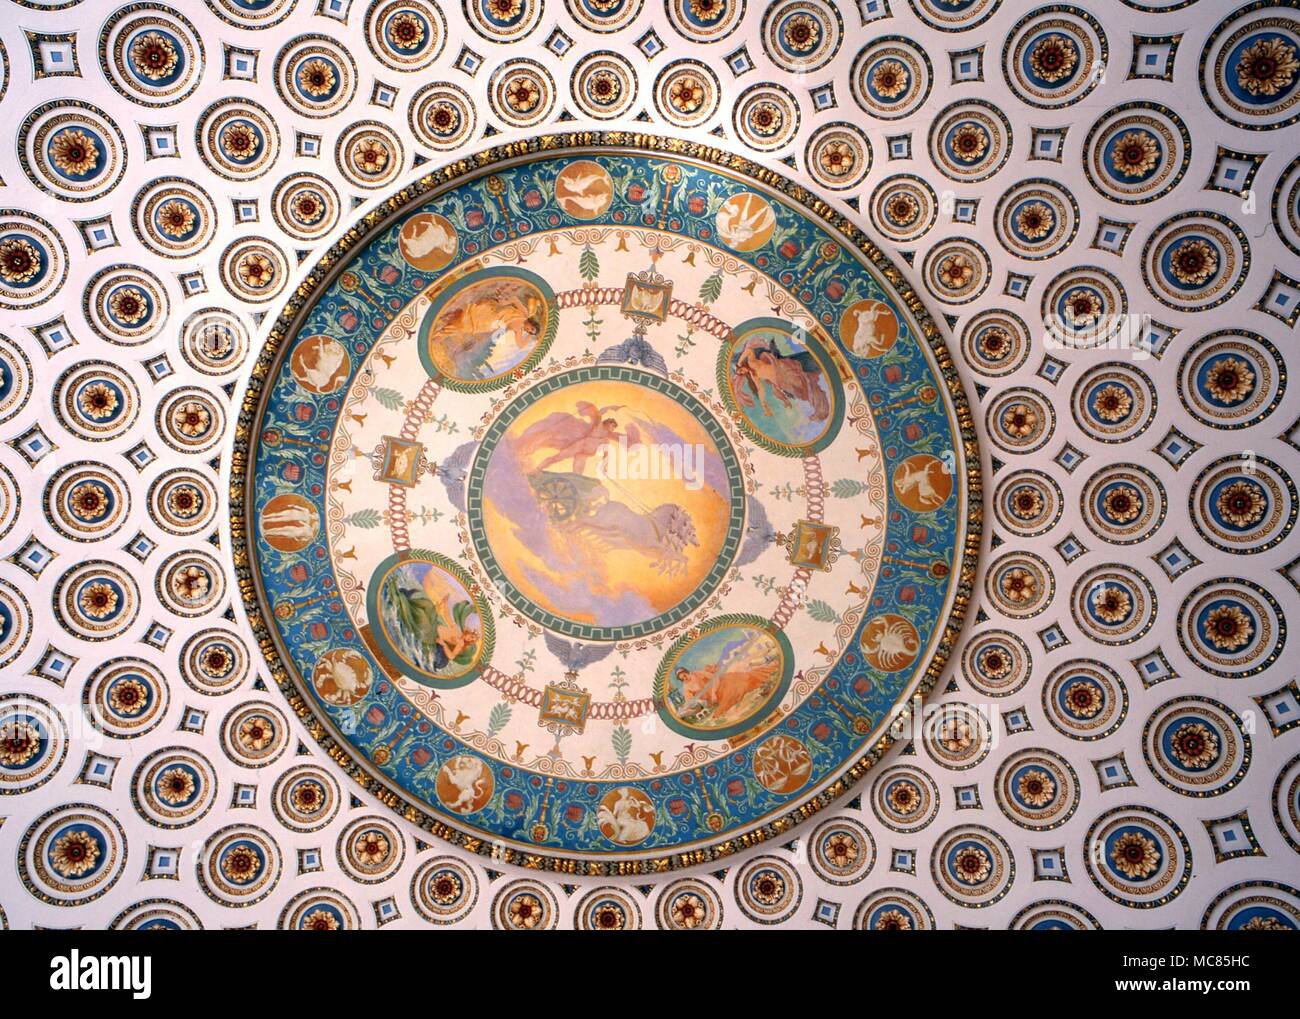 Zodiaque - Washington DC. Zodiaque complet sur le plafond peint par Elmer Ellsworth Garnsey, vers 1897, dans le sud-est de la Bibliothèque du Congrès, Washington DC. Banque D'Images